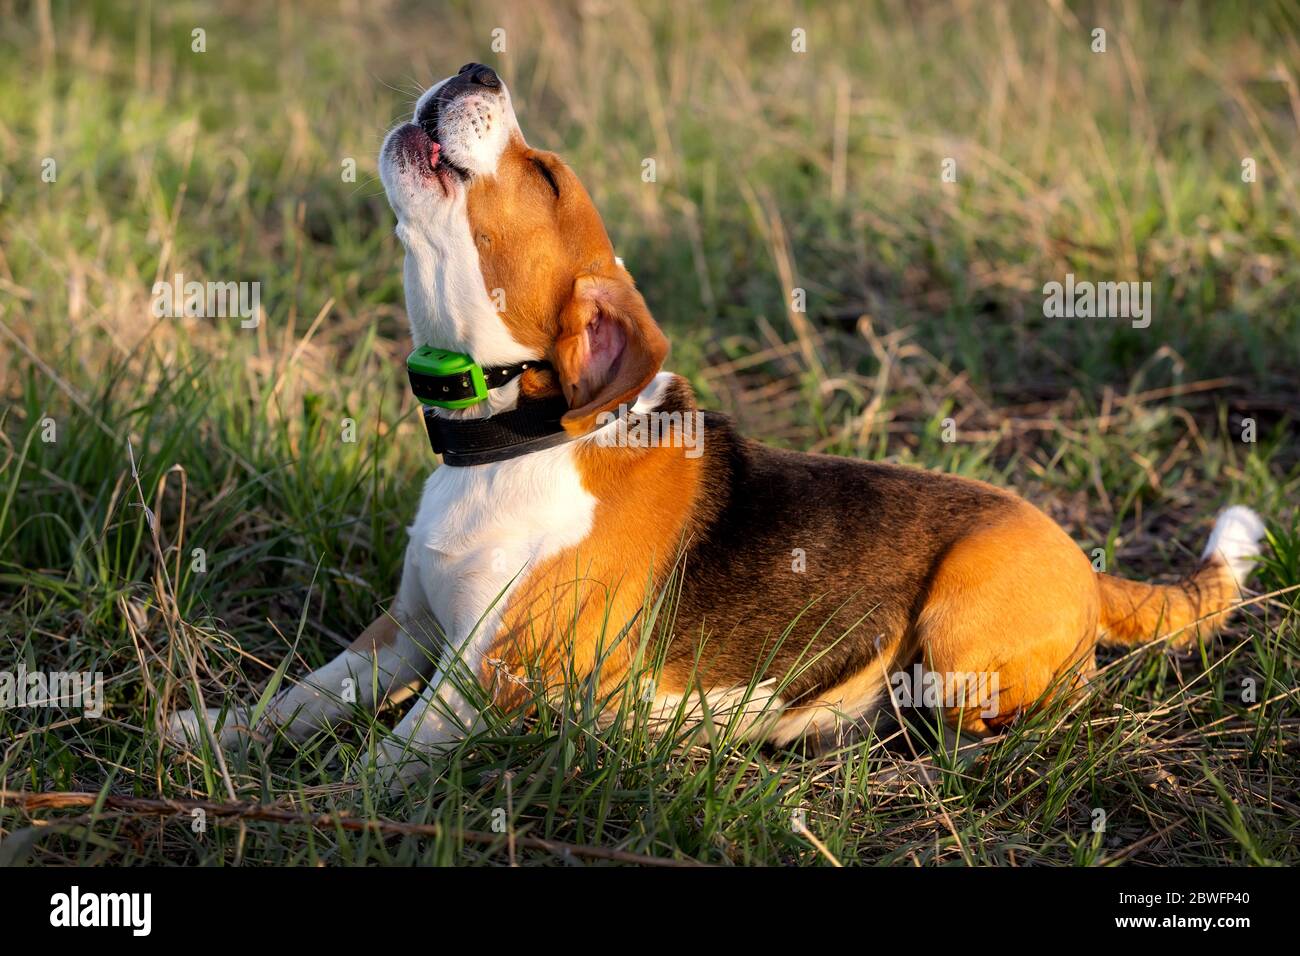 Lindo perro beagle tumbado en la hierba y ladrando Foto de stock